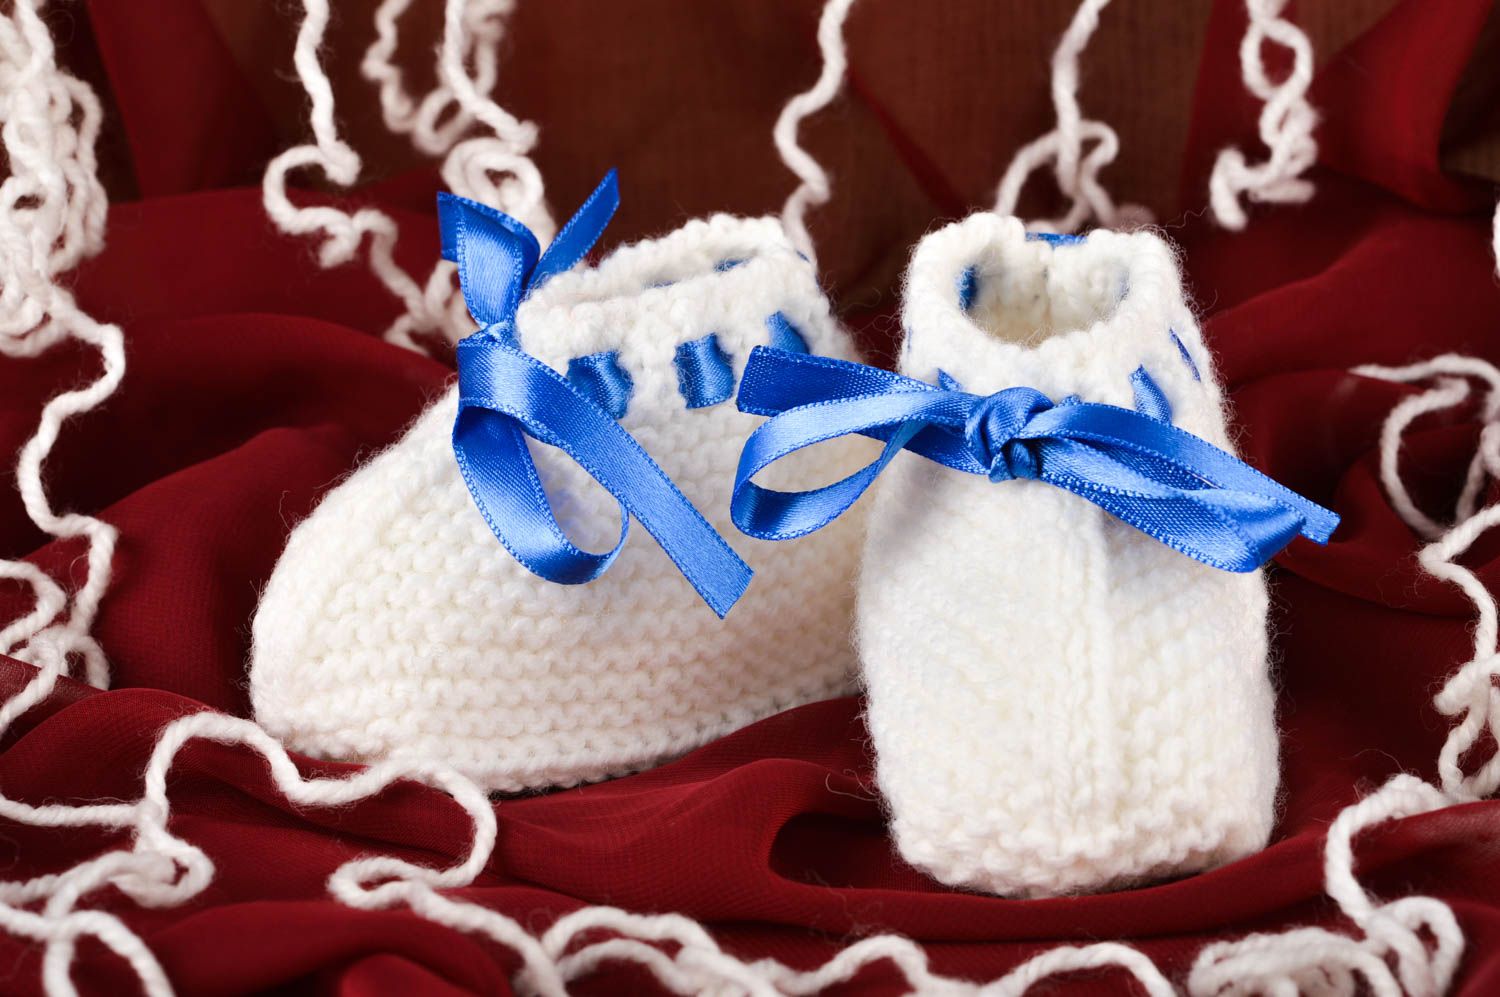 Handmade crochet baby booties warm booties baby accessories gift ideas photo 1